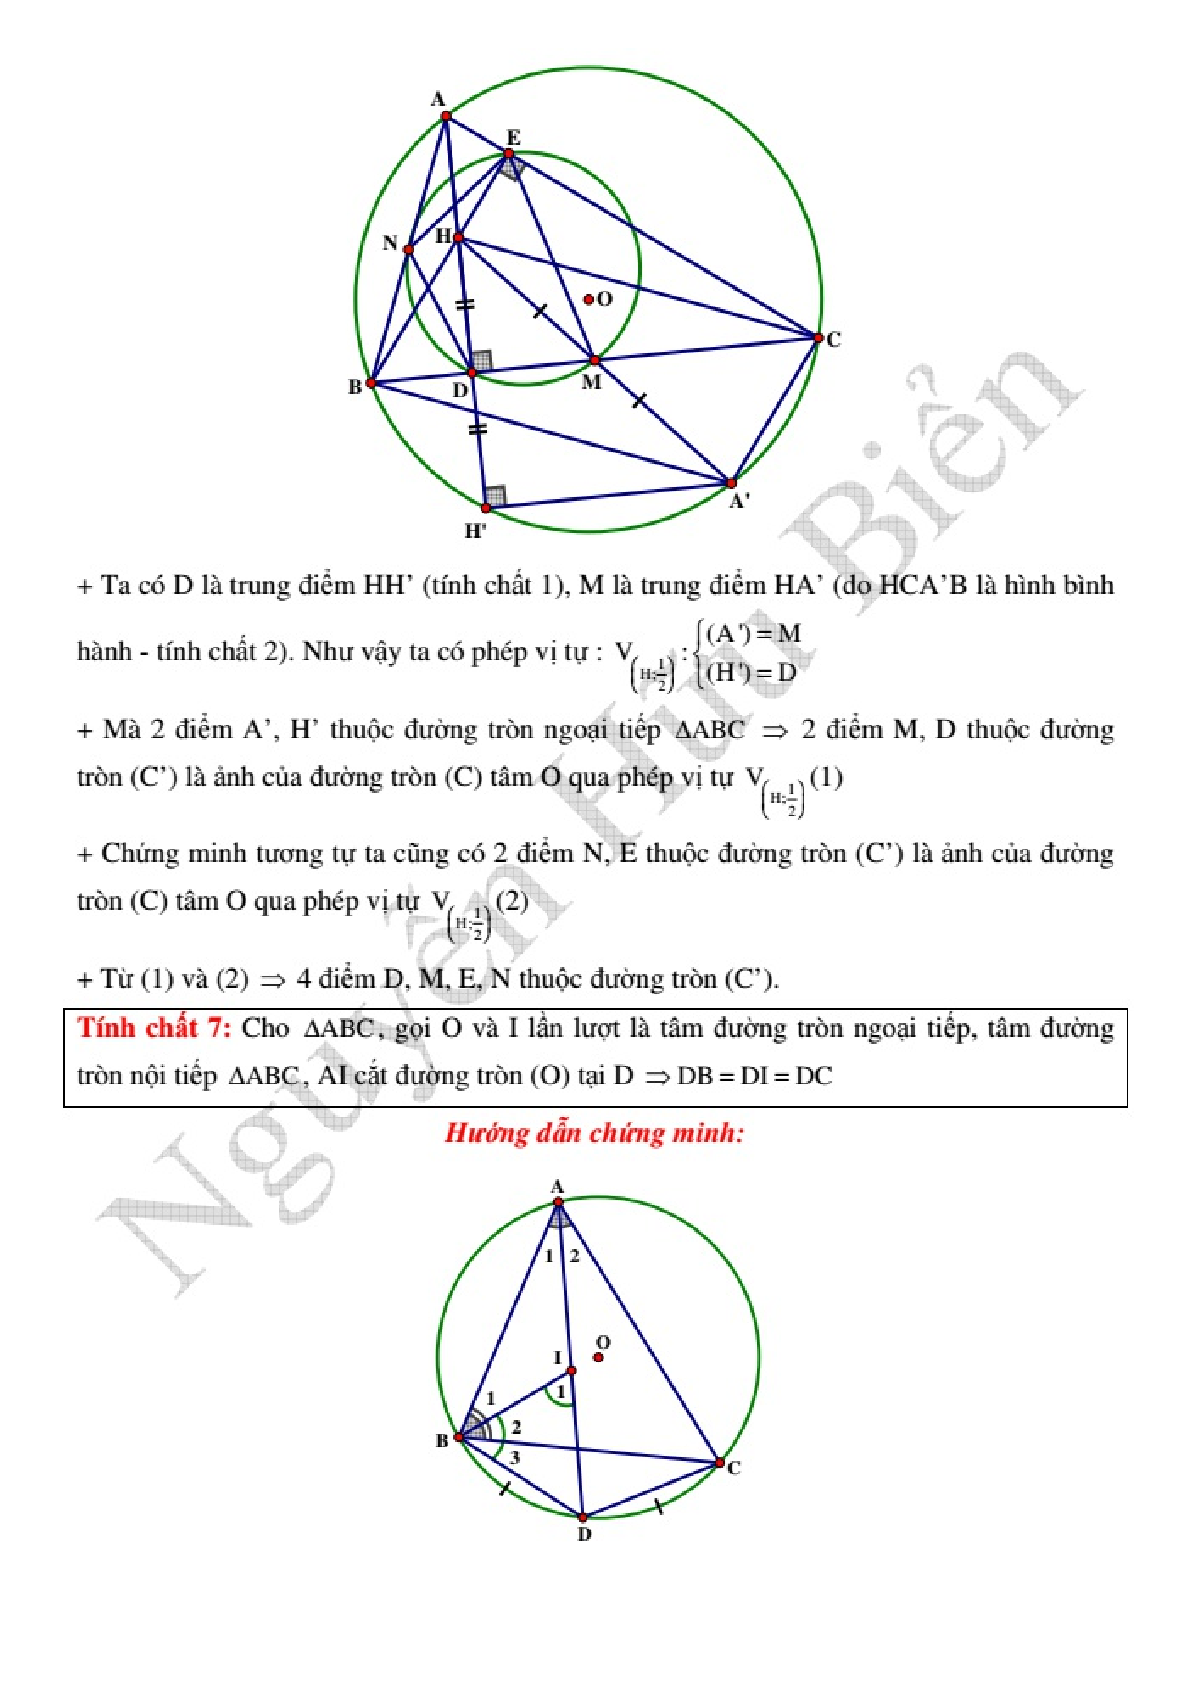 Kỹ thuật công phá hình học phẳng Oxy để giải nhanh (trang 6)